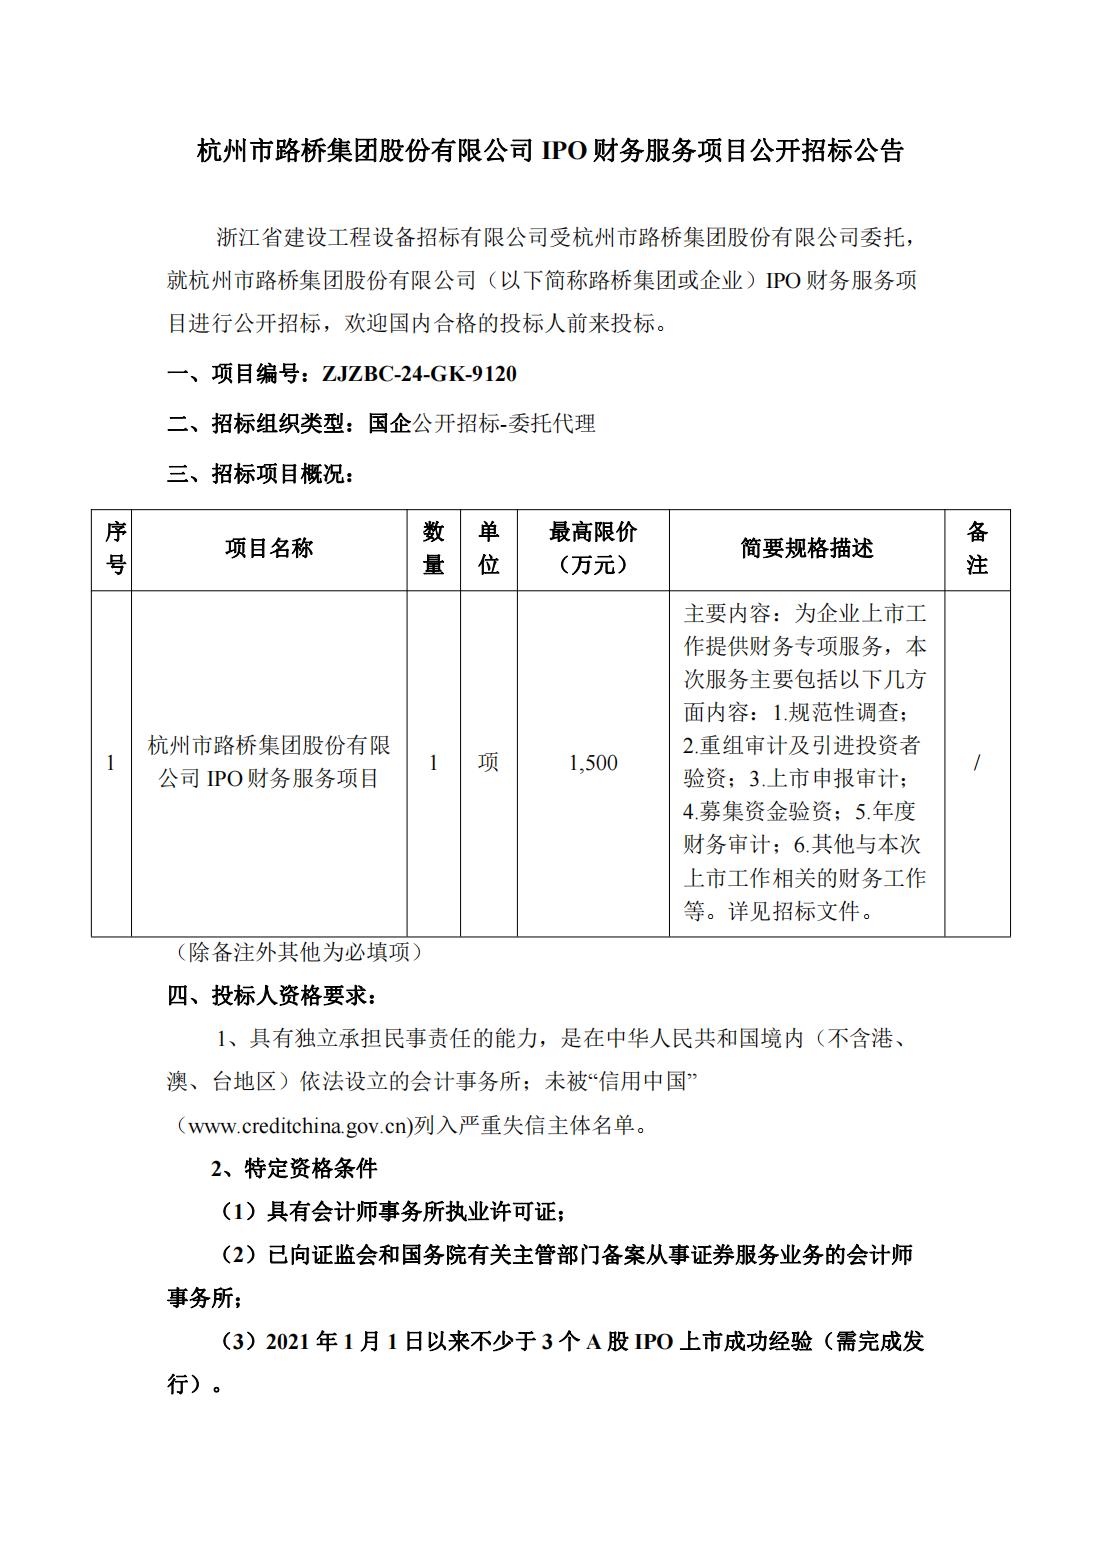 杭州市bat365官网登录入口集团股份有限公司IPO财务服务项目公开招标公告_00(1).jpg